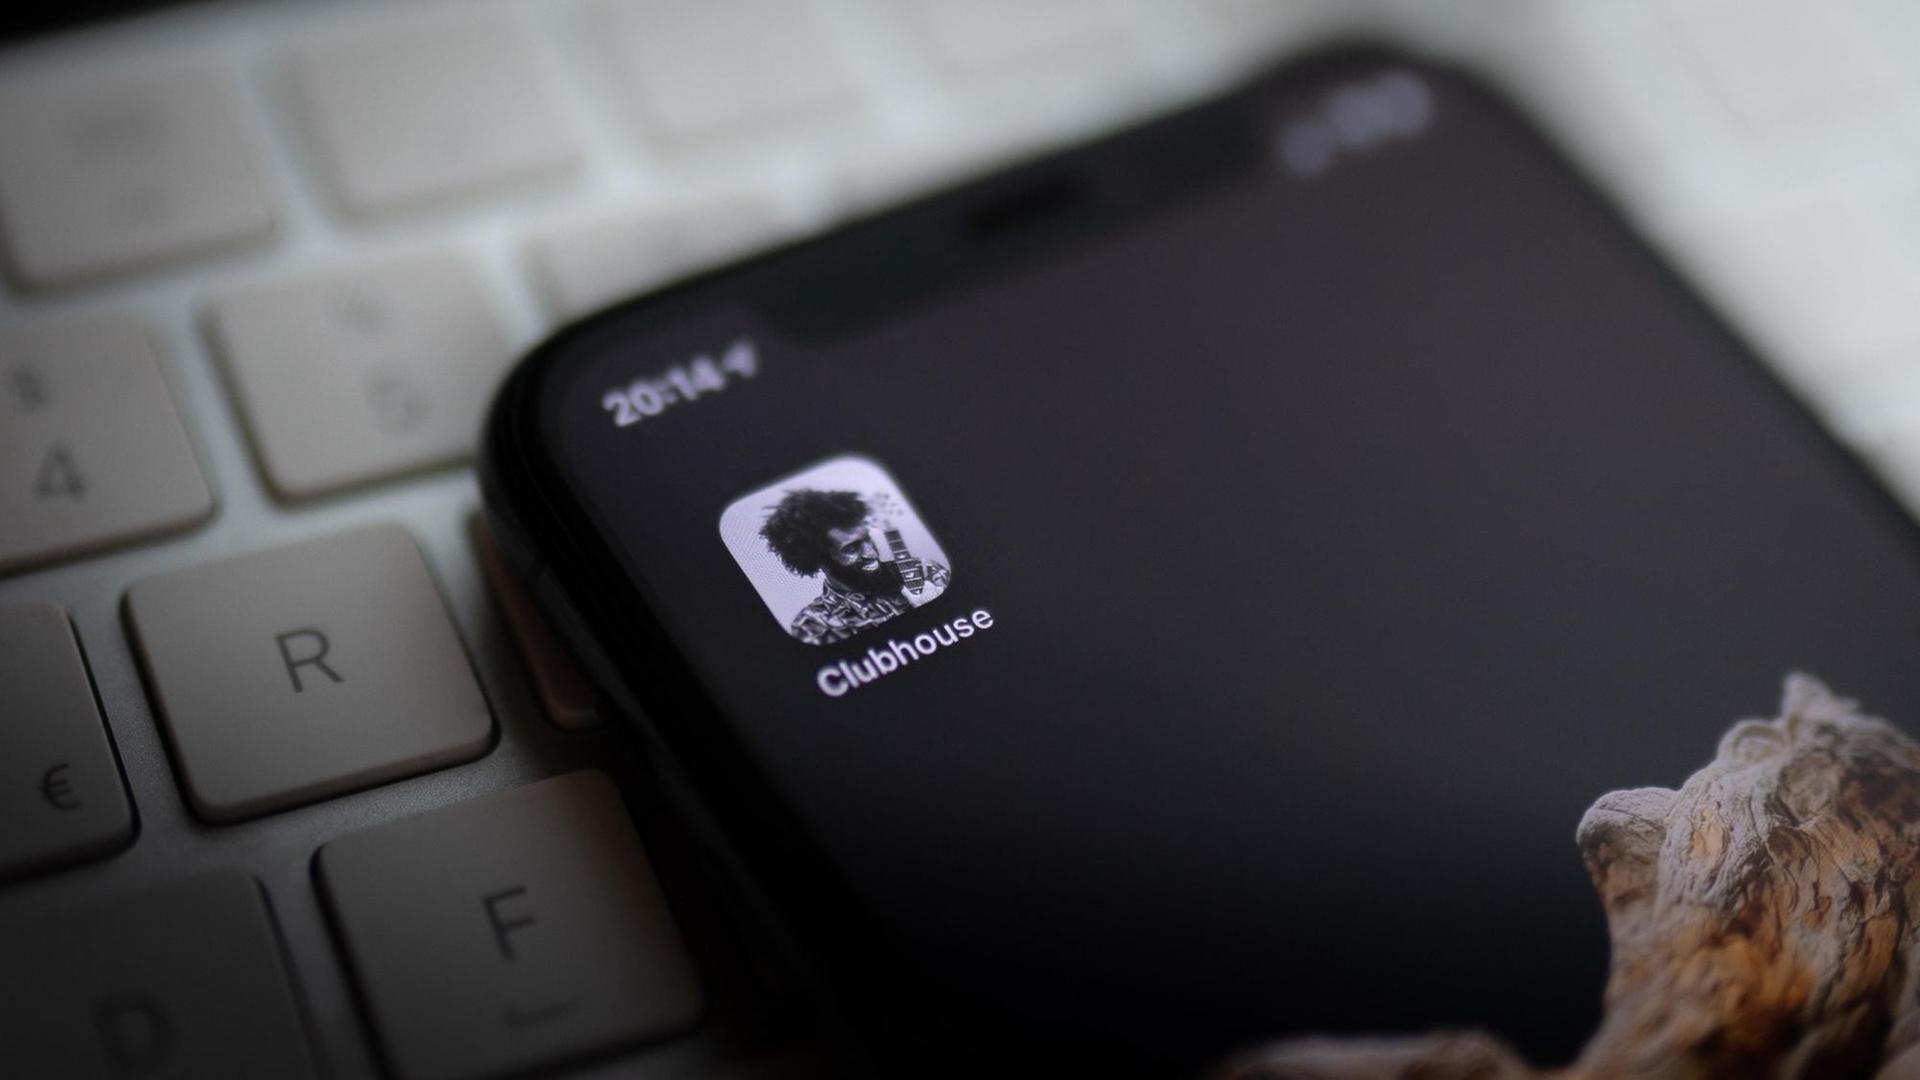 Das Logo der neuen Social-Media-App "Clubhouse" auf dem Display eines iPhones.